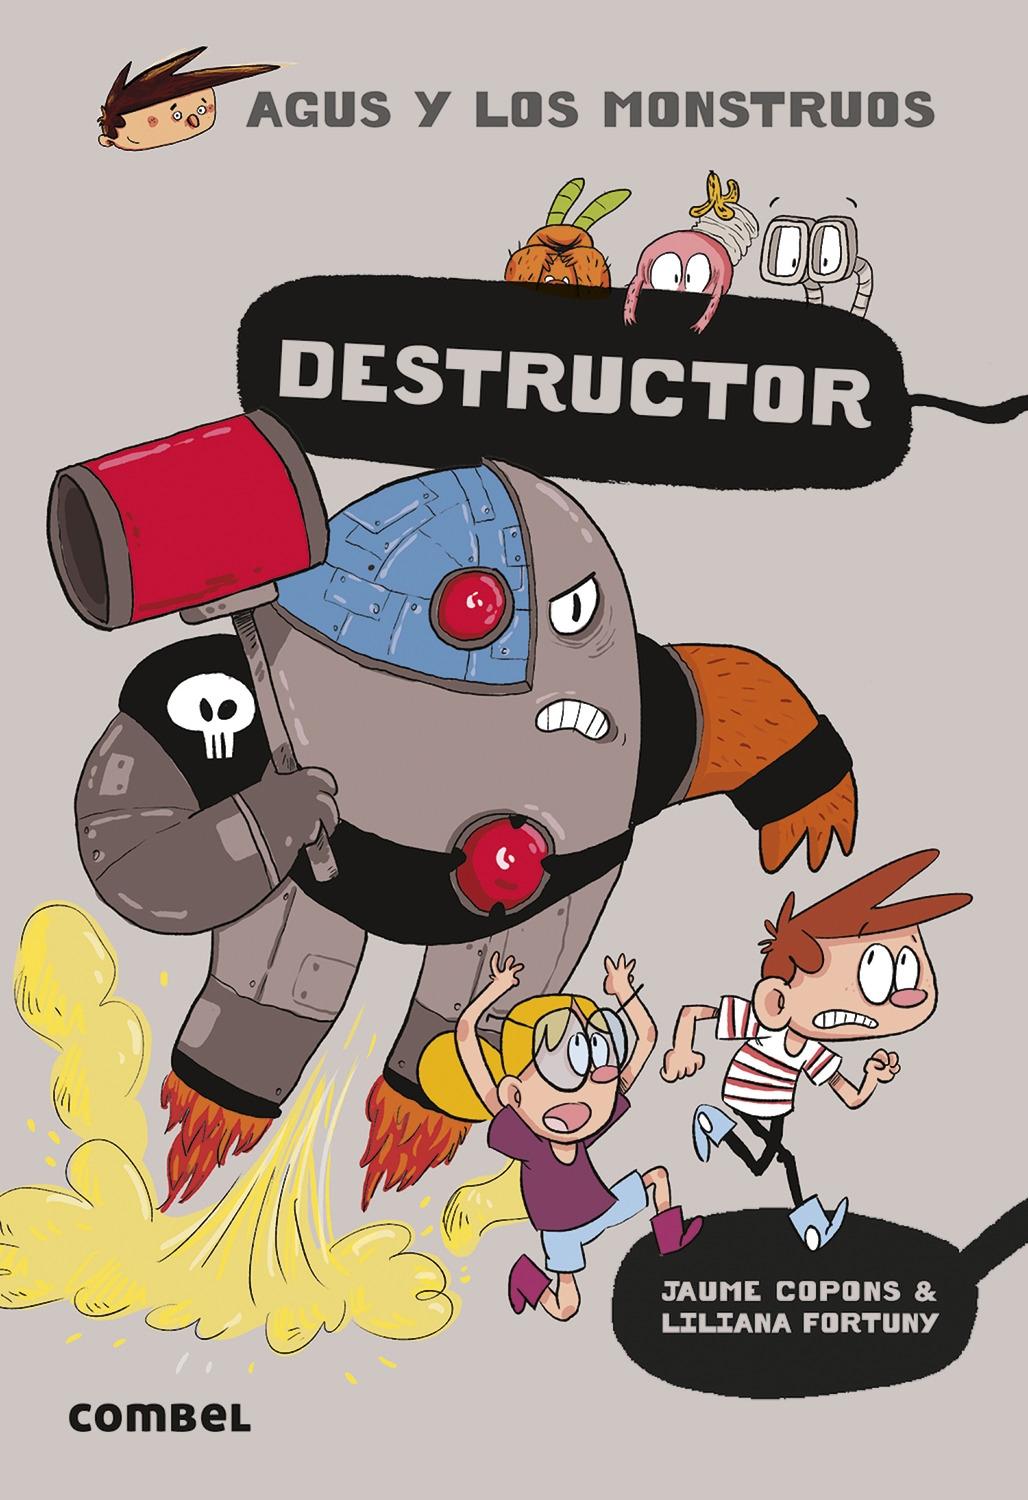 Agus y los monstruos 19 "Destructor". 